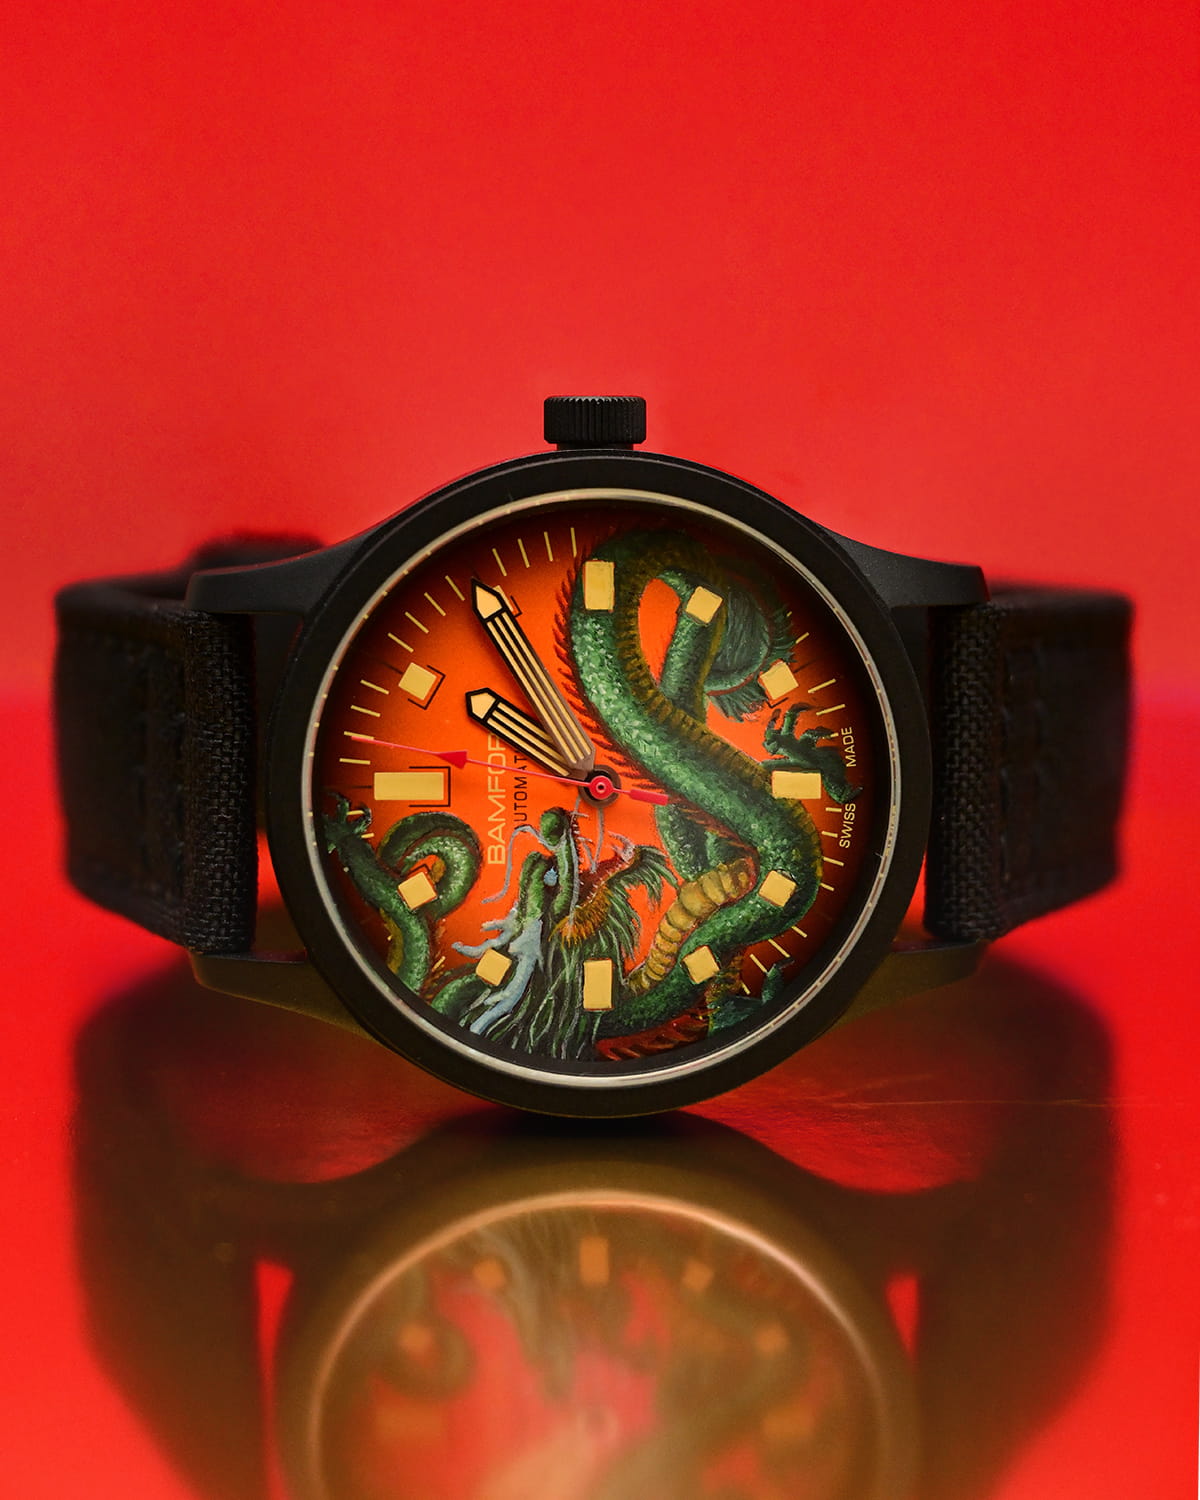 Buy Personalized One Stroke Art Watch Box Online On Zwende